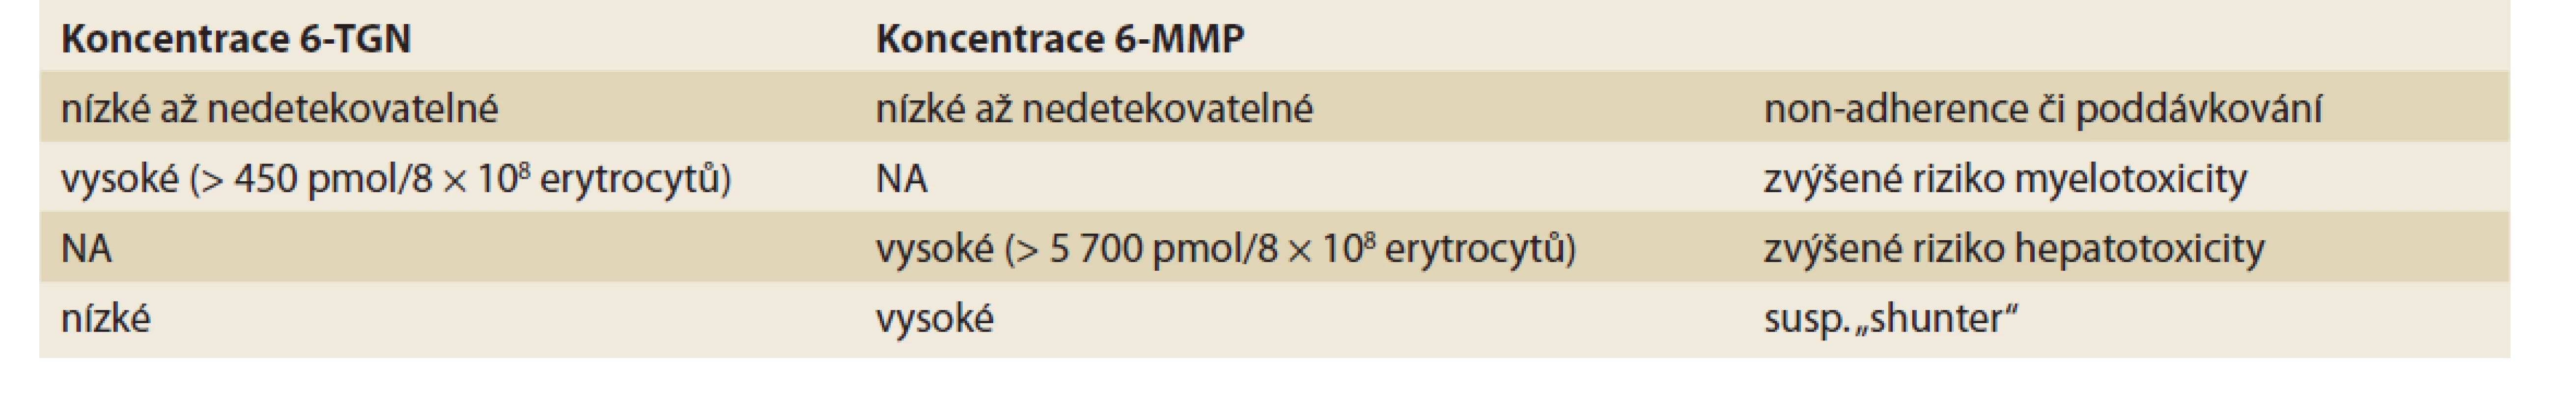 Využití stanovení thiopurinových metabolitů v klinické praxi.<br>
Tab. 1. The use of thiopurine metabolite measurement in clinical praxis.